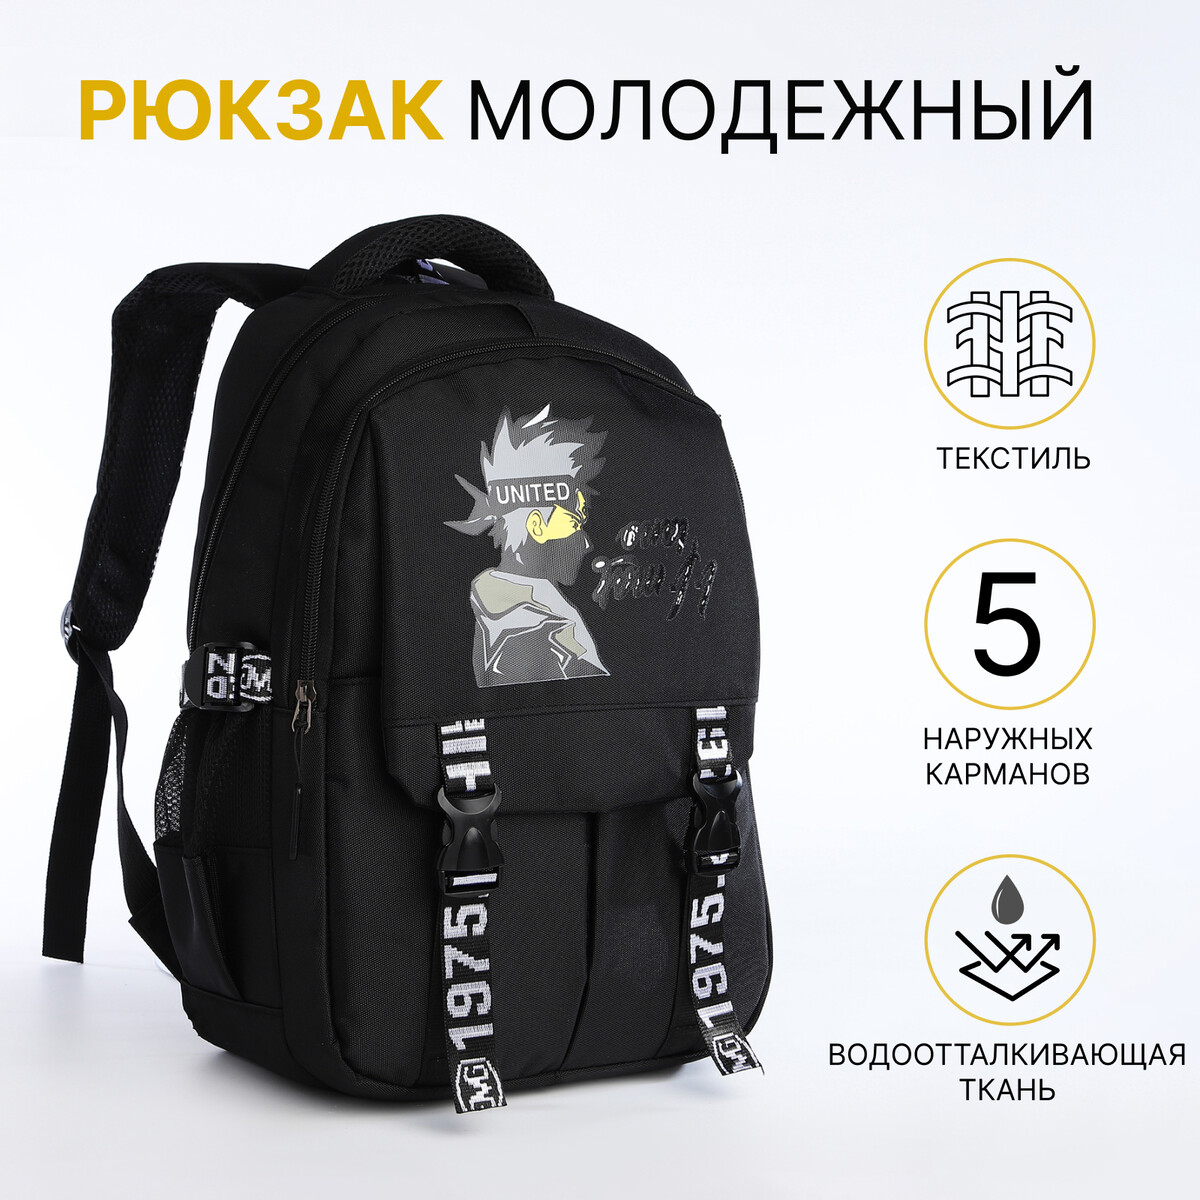 Рюкзак школьный на молнии, 5 карманов, цвет черный